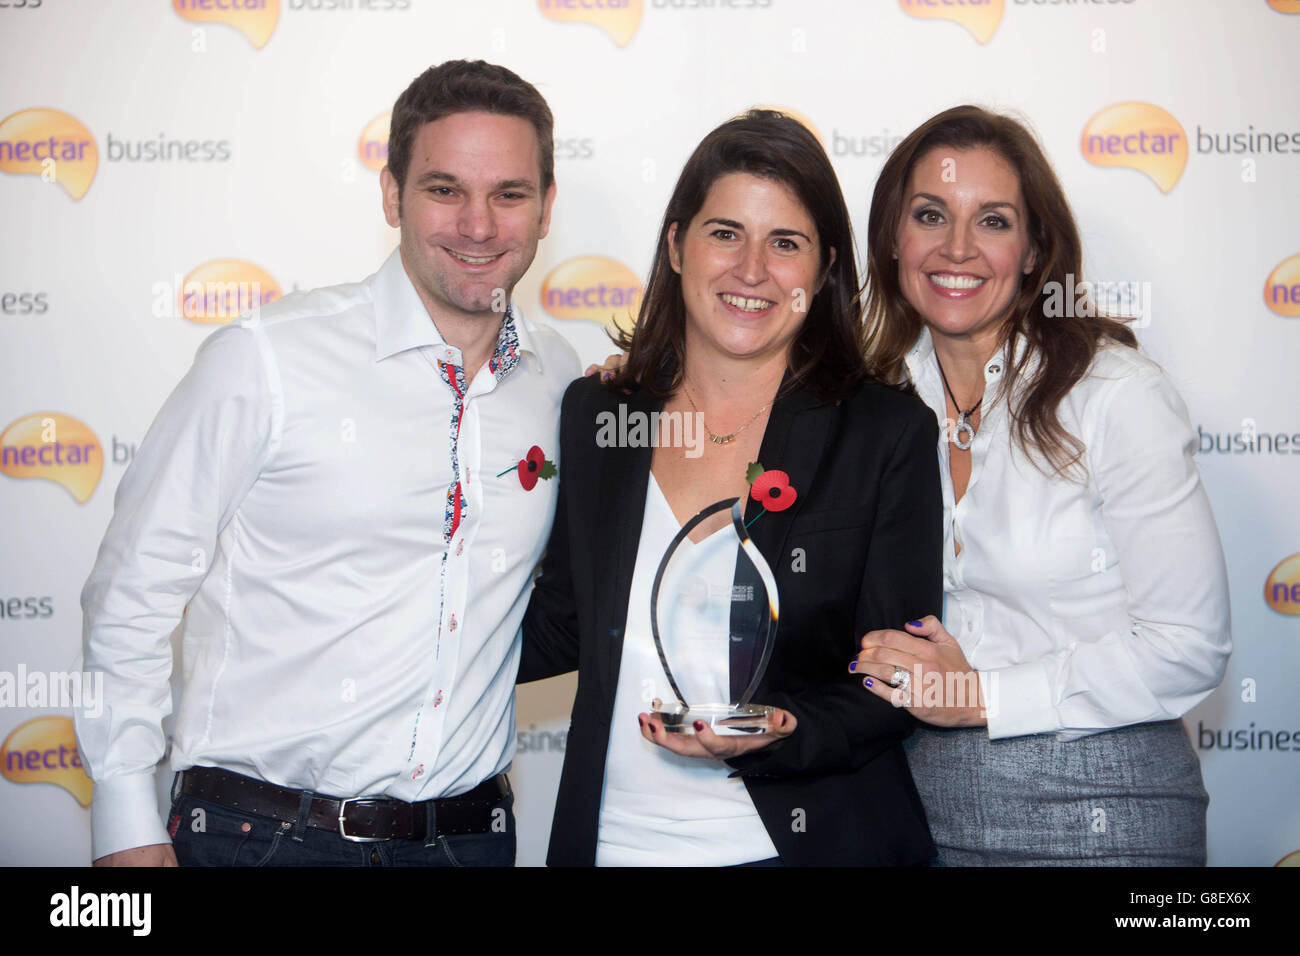 Beatrice de Montille, de Merci Maman, célèbre le prix de l'Entrepreneur de l'année, avec Sarah Willingham de Dragons's Den (à droite) et Wwill Shuckburgh, directeur général de Nectar (à gauche), lors de la table ronde des Nectar Business Small Business Awards 2015 à Londres. Banque D'Images